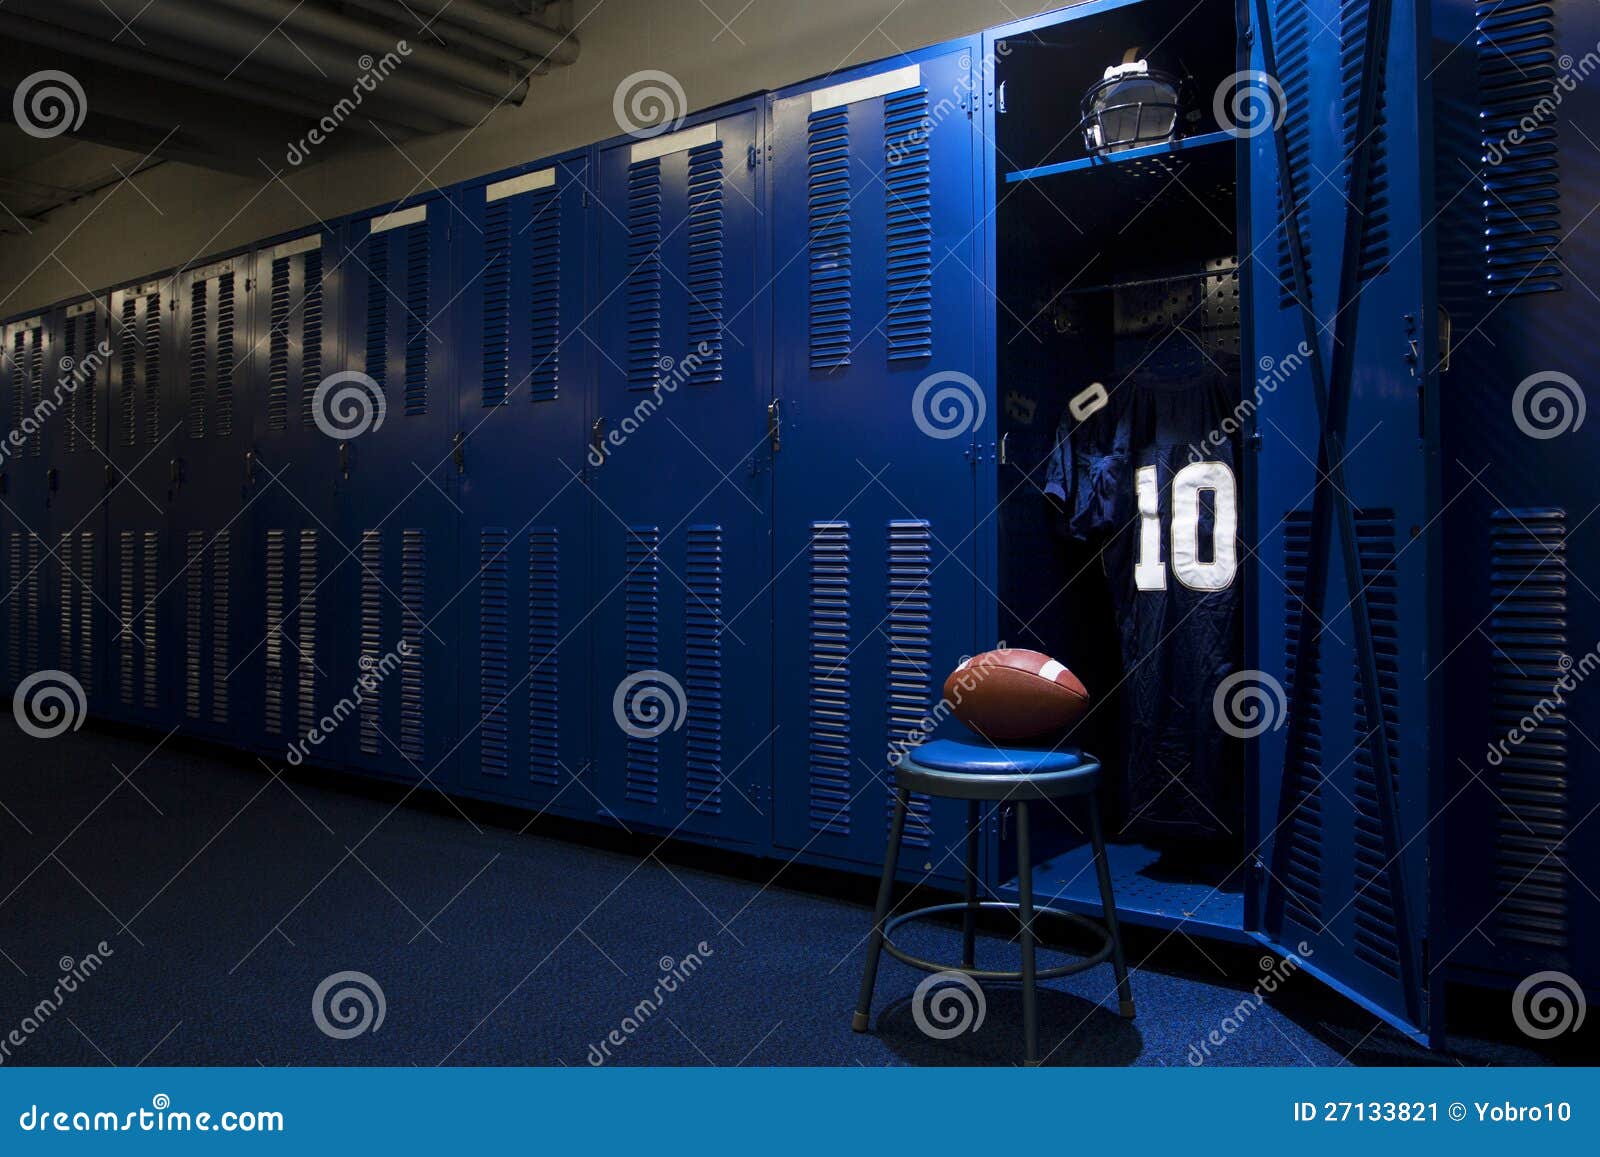 football locker room